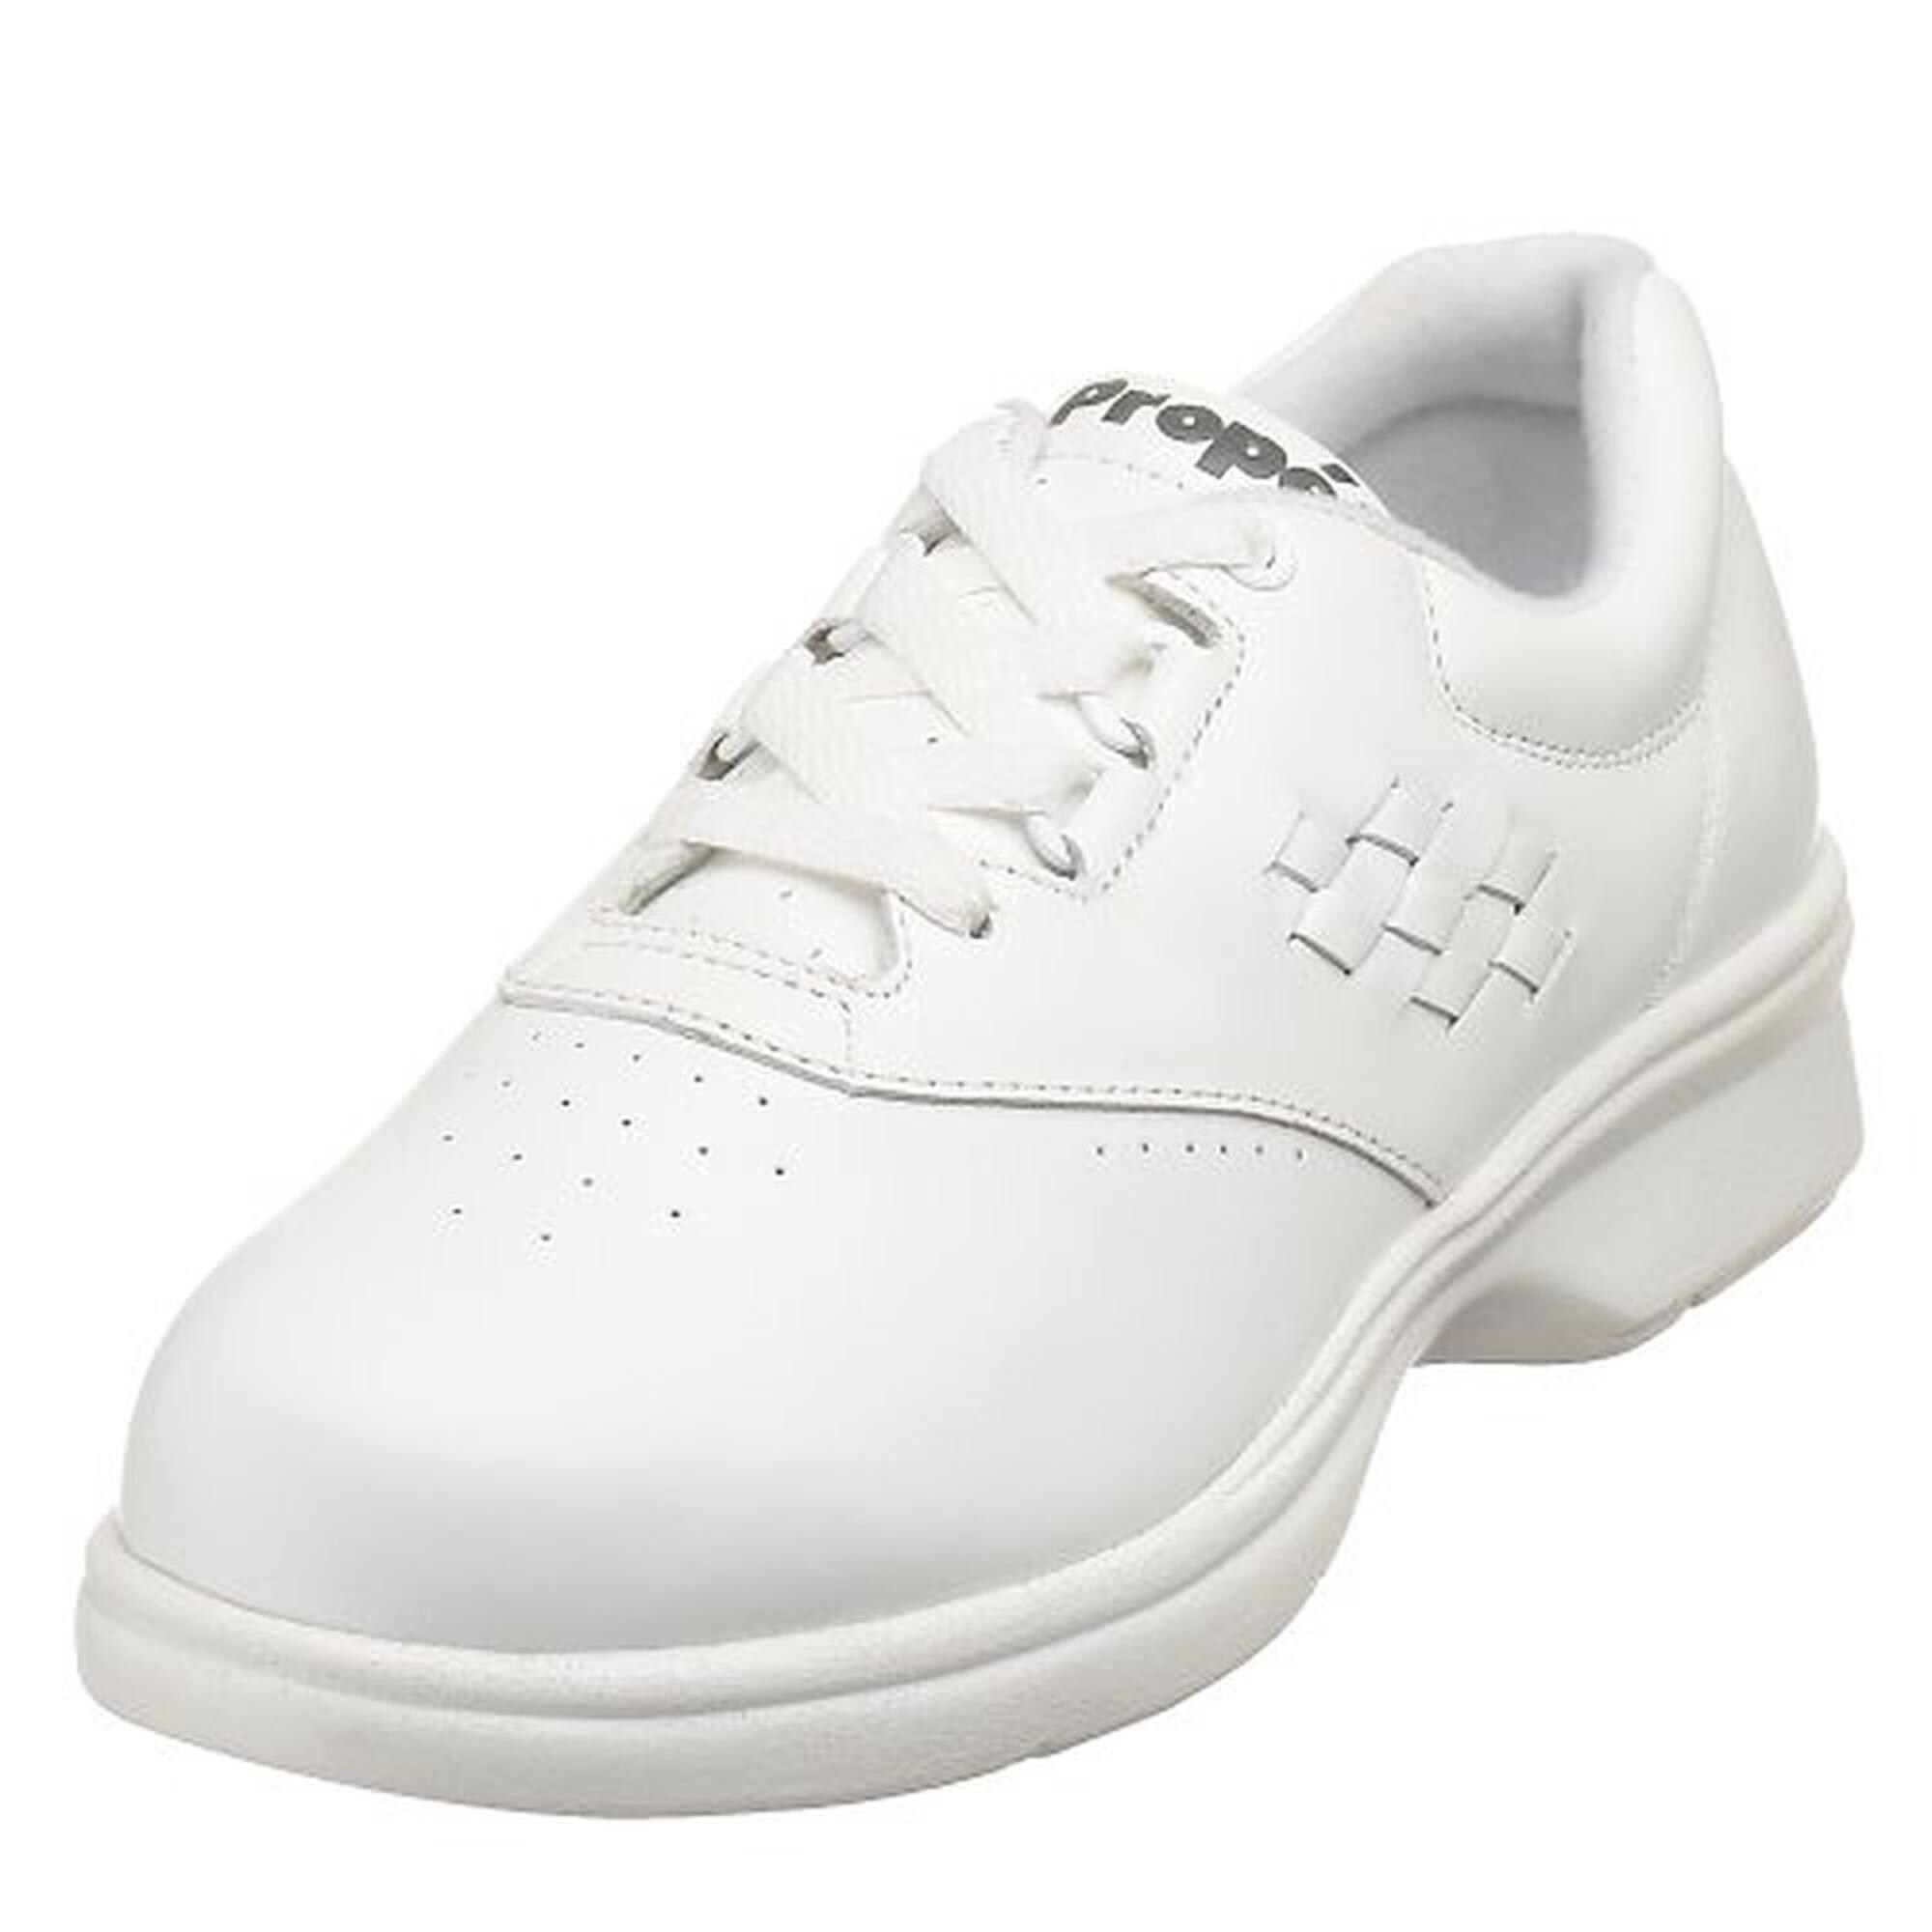 propet tennis shoes